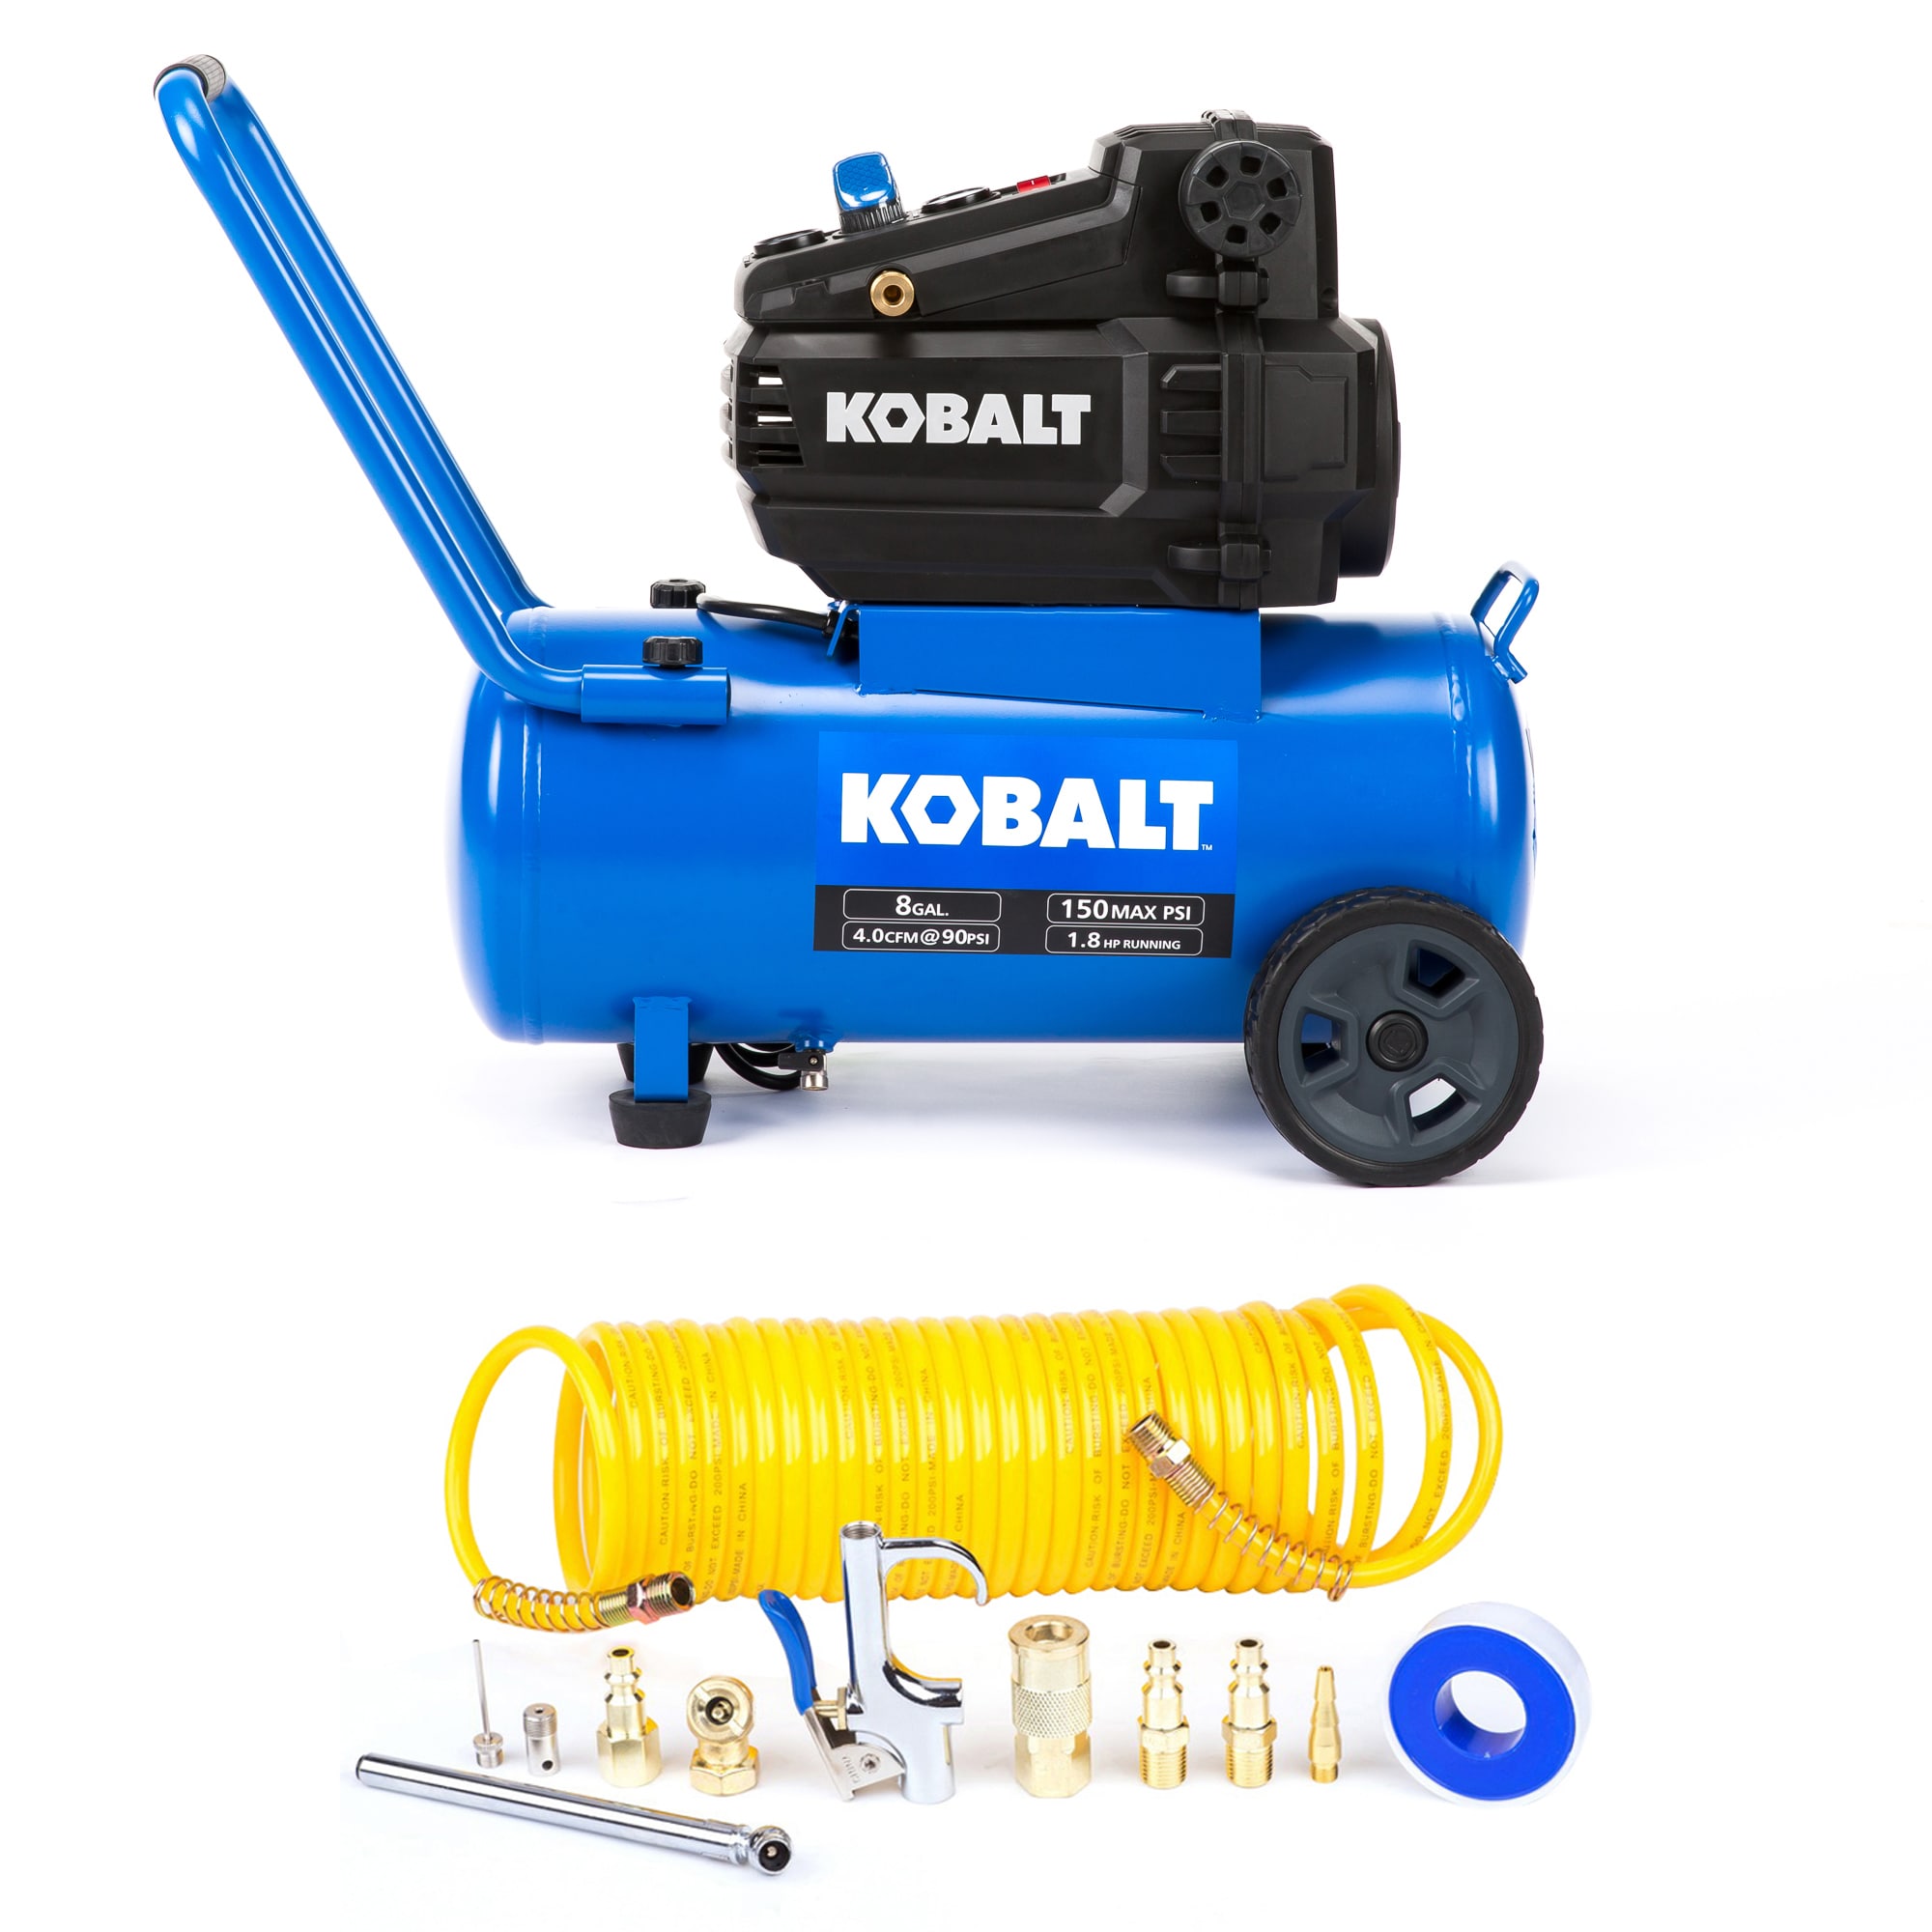 Kobalt 12-piece Accessory Kit